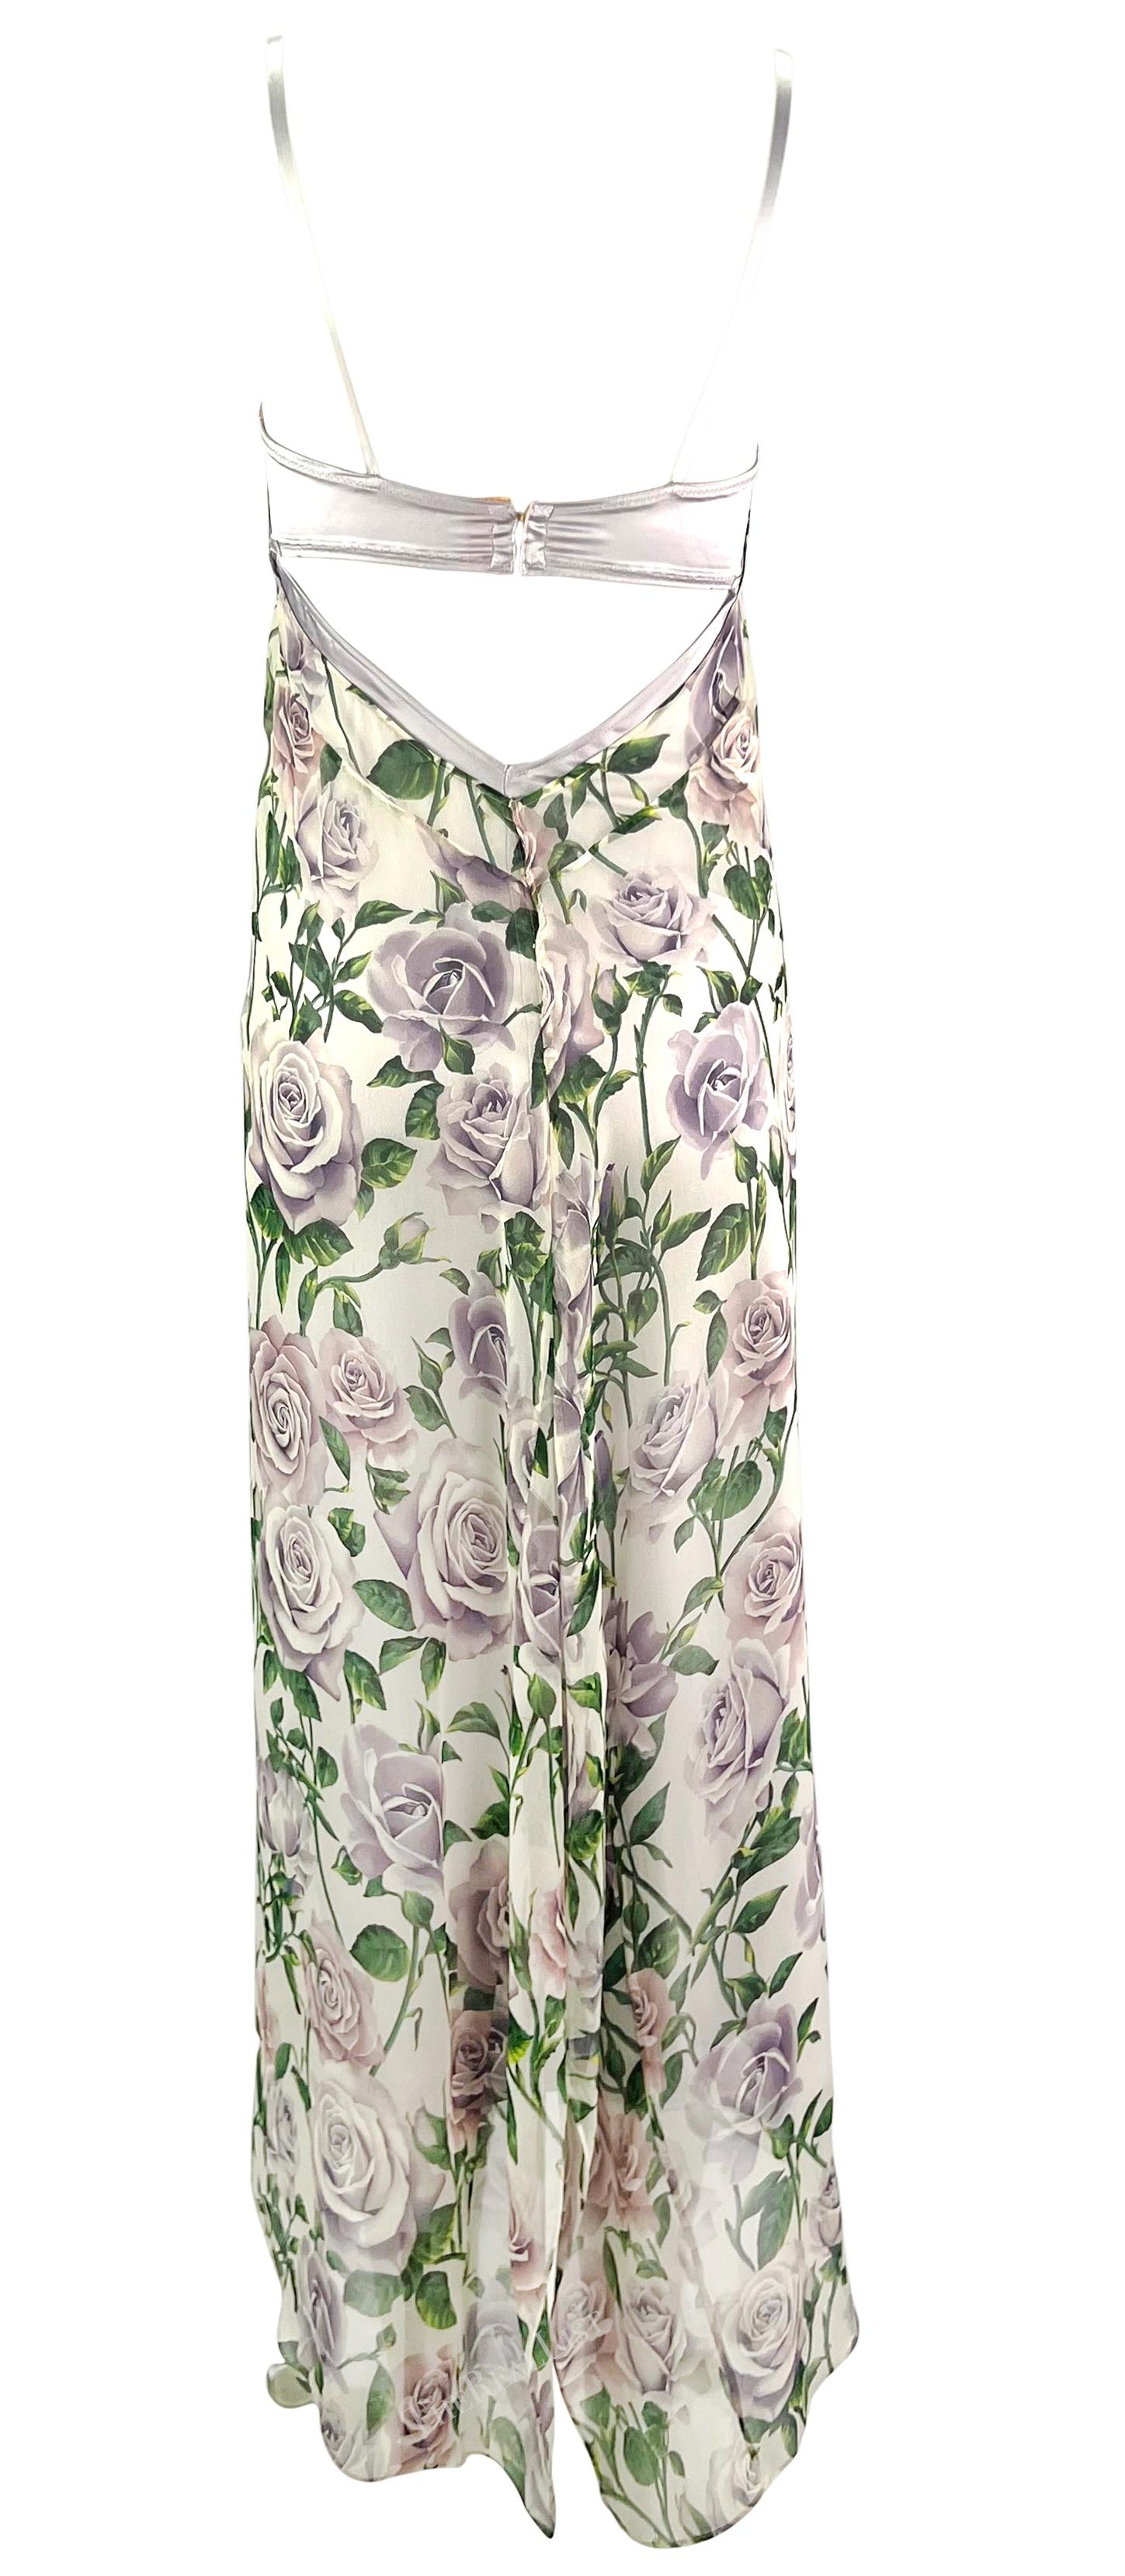 Ich präsentiere ein wunderschönes knöchellanges Kleid mit lila Rosenprint von Dolce & Gabbana. Dieses Kleid aus der Kollektion der frühen 2000er Jahre zeichnet sich durch den für Dolce & Gabbana typischen integrierten BH aus, der mit einem leichten,